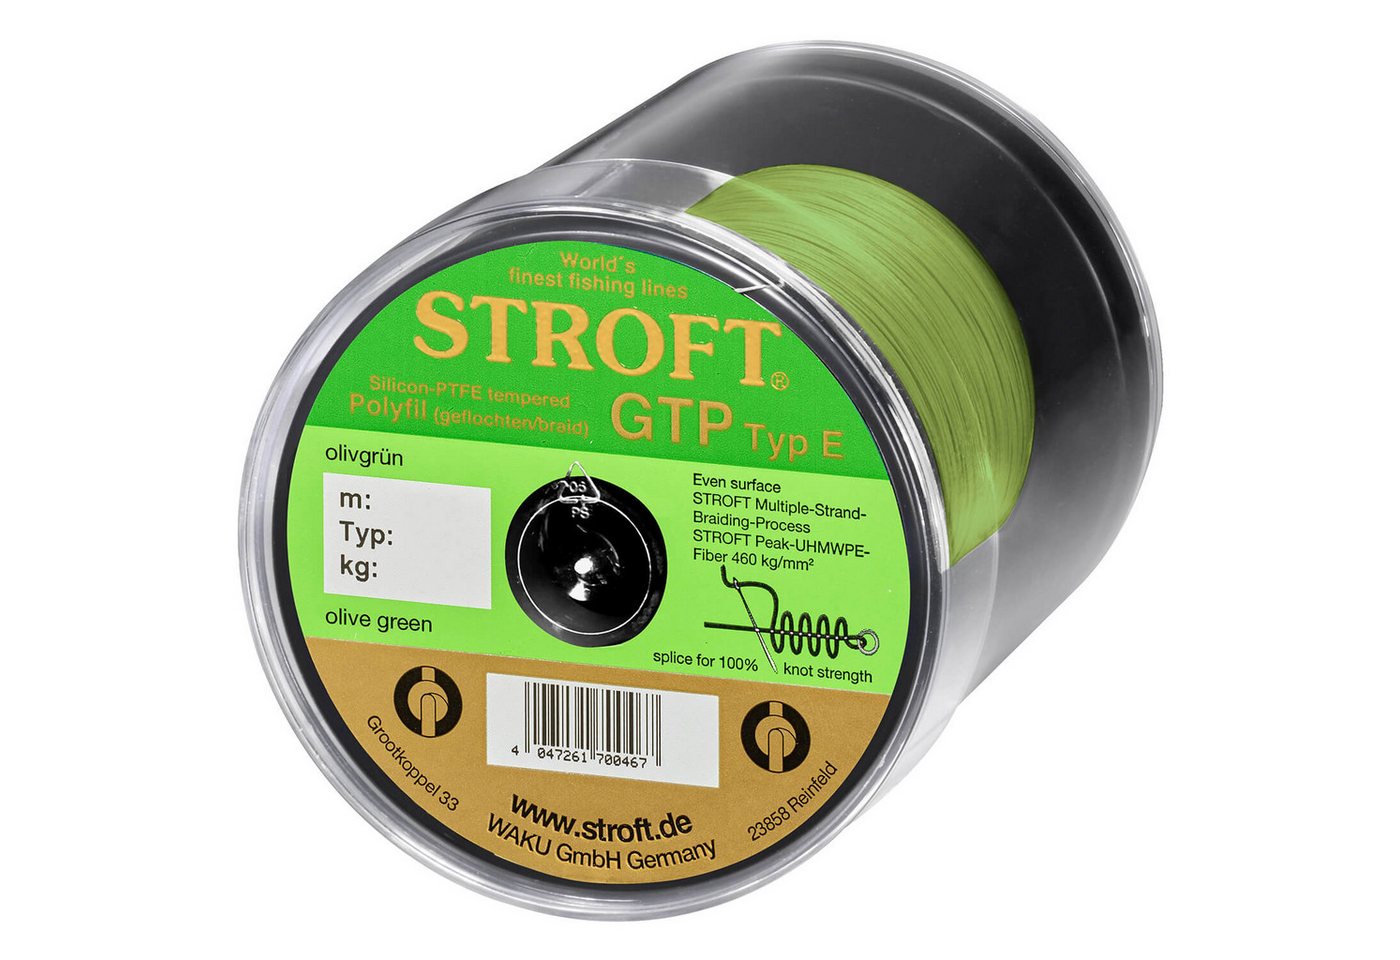 Stroft Angelschnur Stroft Schnur GTP Typ E geflochten olivgrün 400m, 400 m Länge, 0.13 mm Fadendurchmesser, (1-St), 4,25kg Tragkraft von Stroft